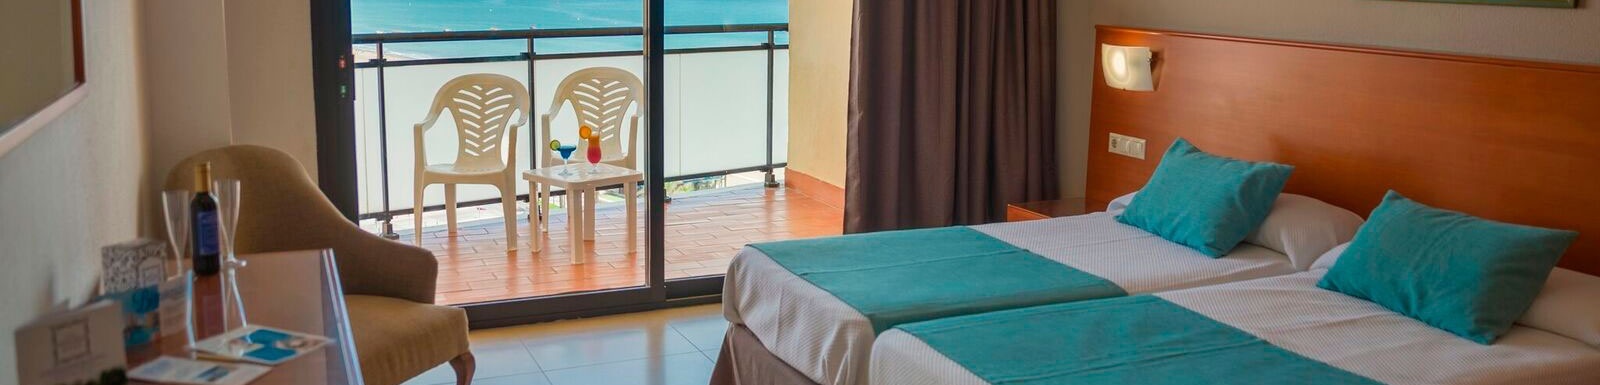 una habitación de hotel con dos camas , una silla y un balcón con vistas al océano .